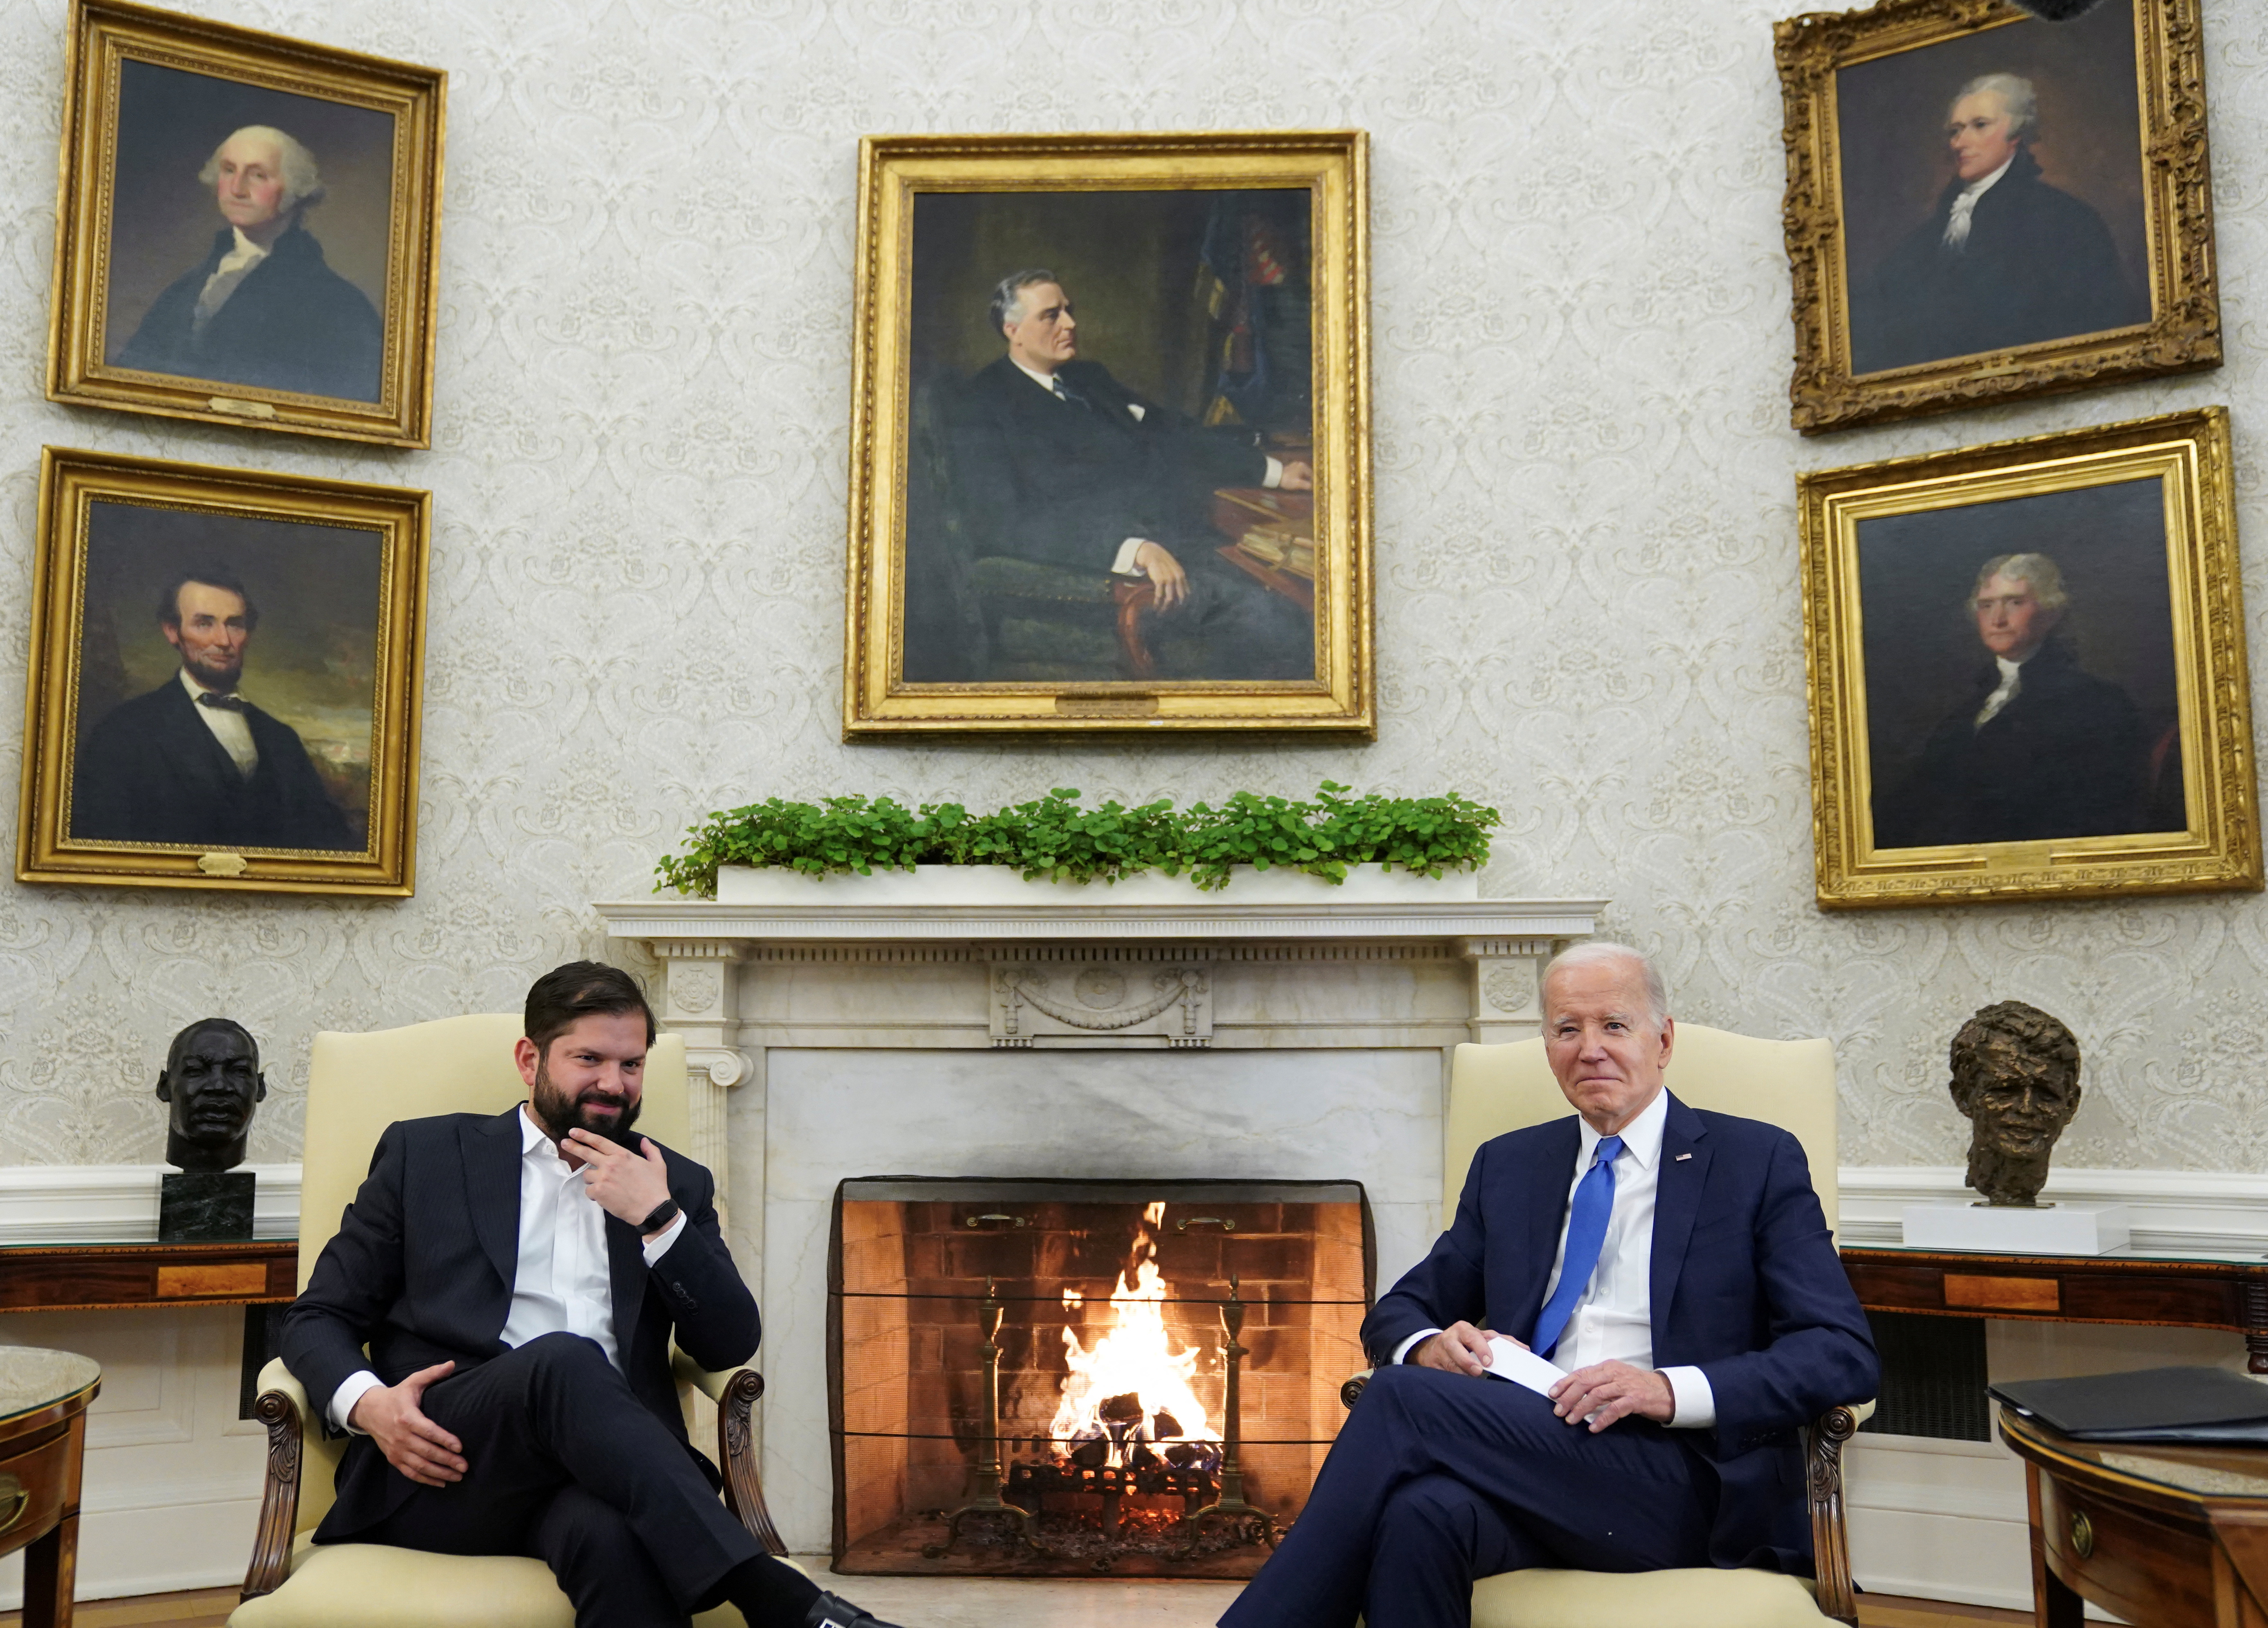 White House Tour: Inside President Joe Biden's New Home